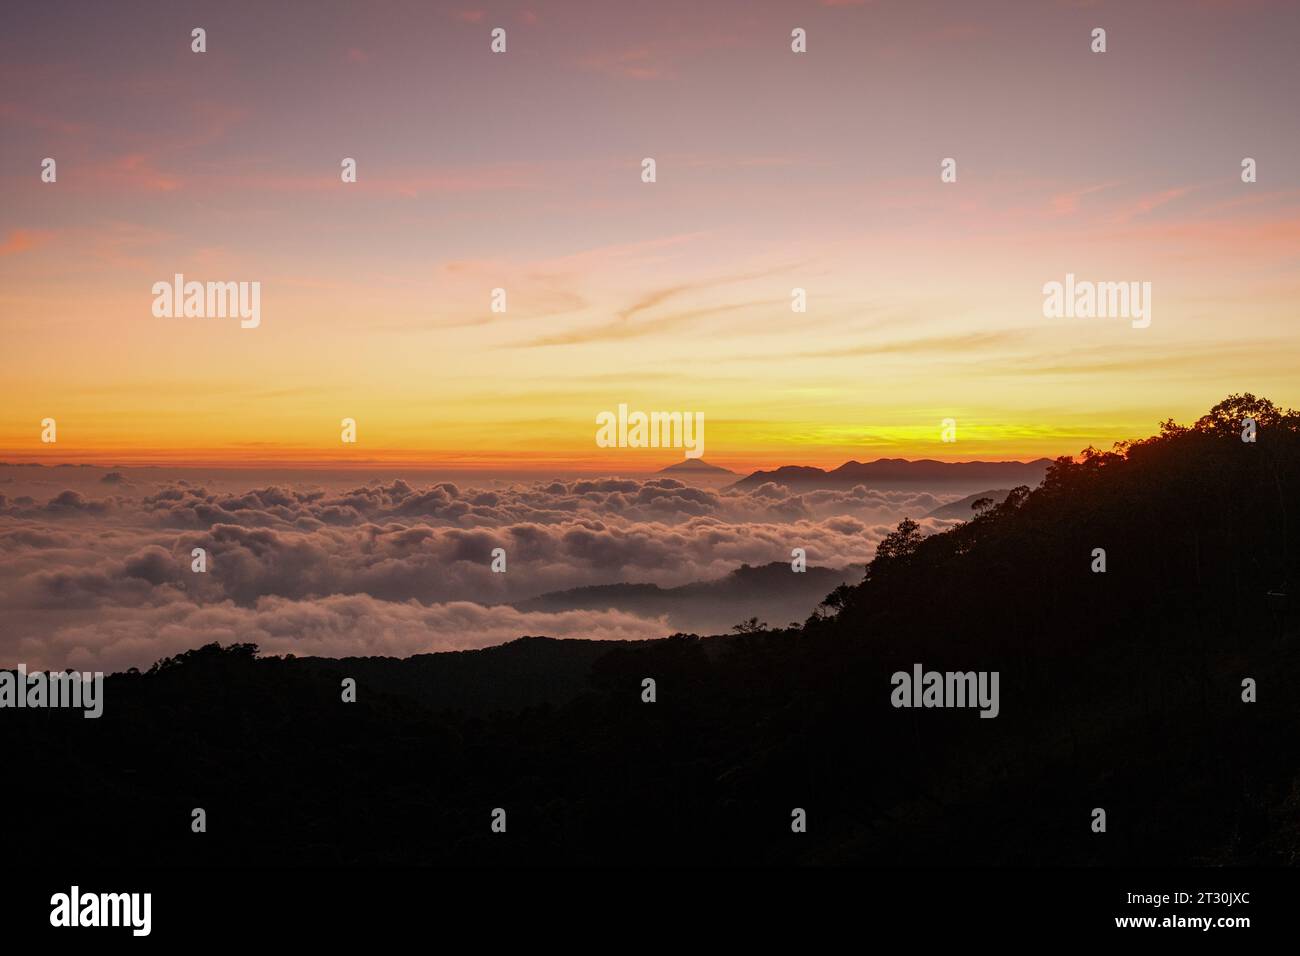 Osserva la bellezza eterea dell'alba su Kawah Putih, mentre le sfumature dorate adornano le nuvole. La tela della natura si risveglia in un'esposizione mozzafiato Foto Stock